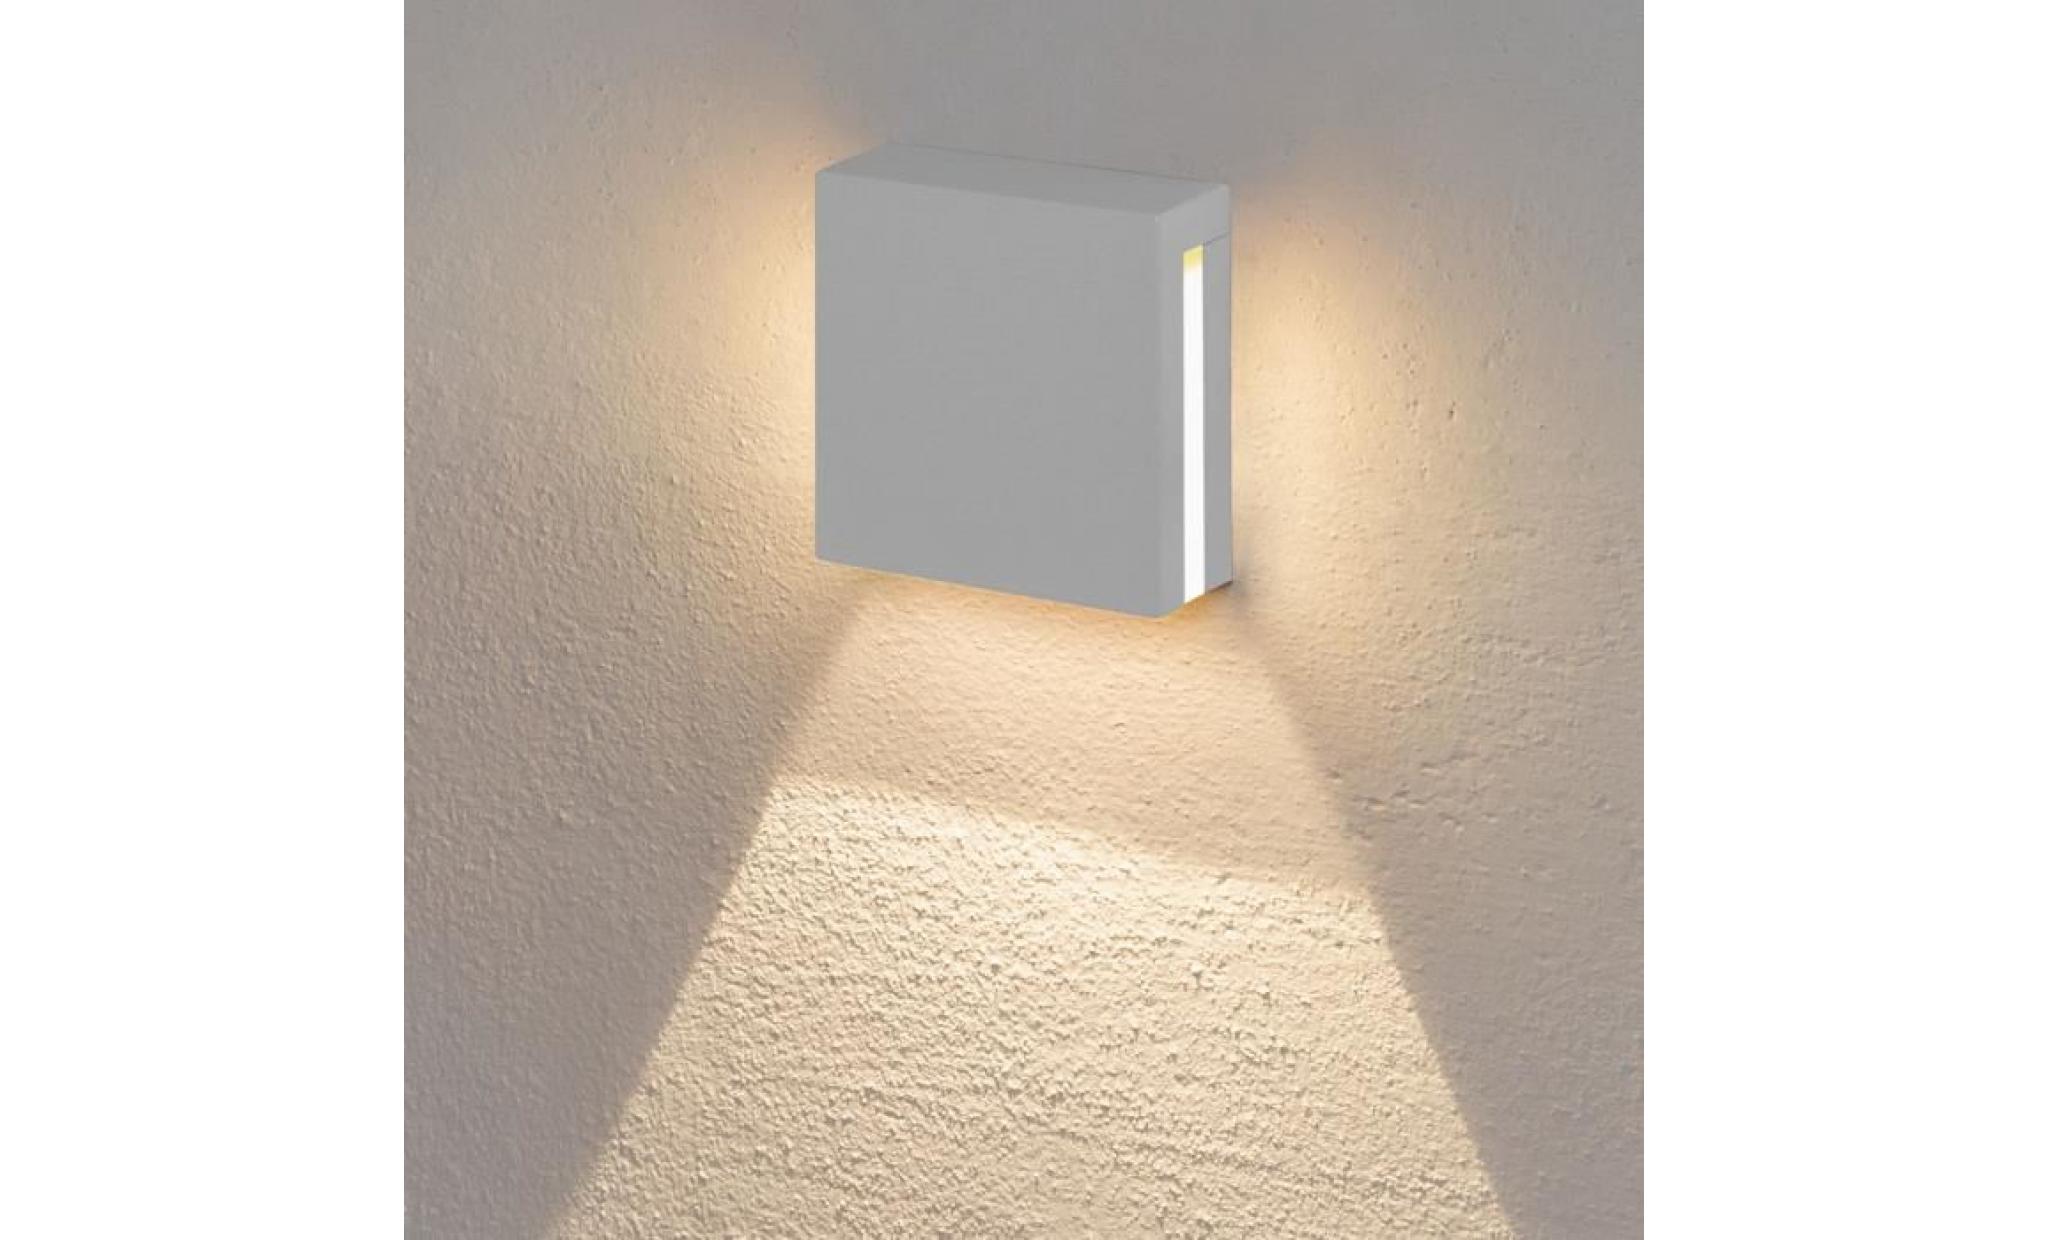 applique à encastrer au mur, led blanc chaud, lampe murale 3 watt, couleur blanche, usage externe